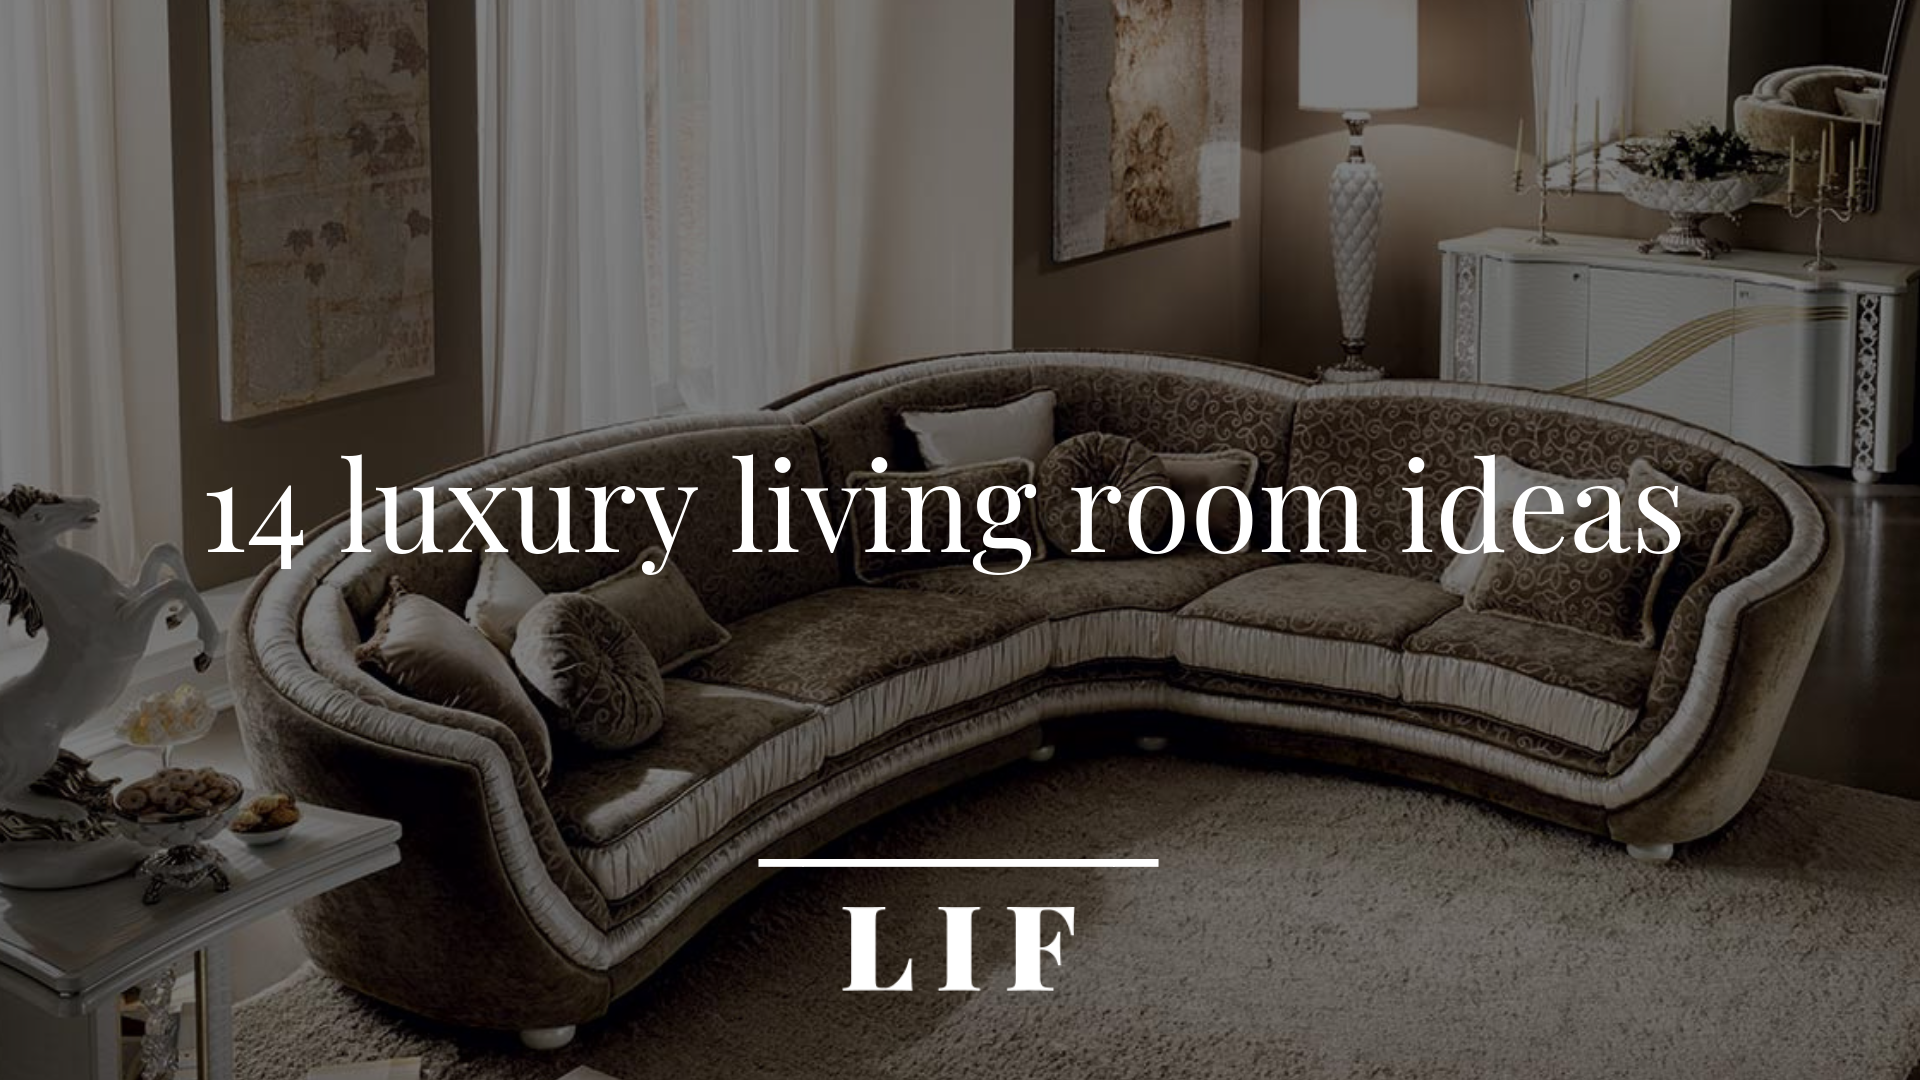 Lif - luxury-livingroom